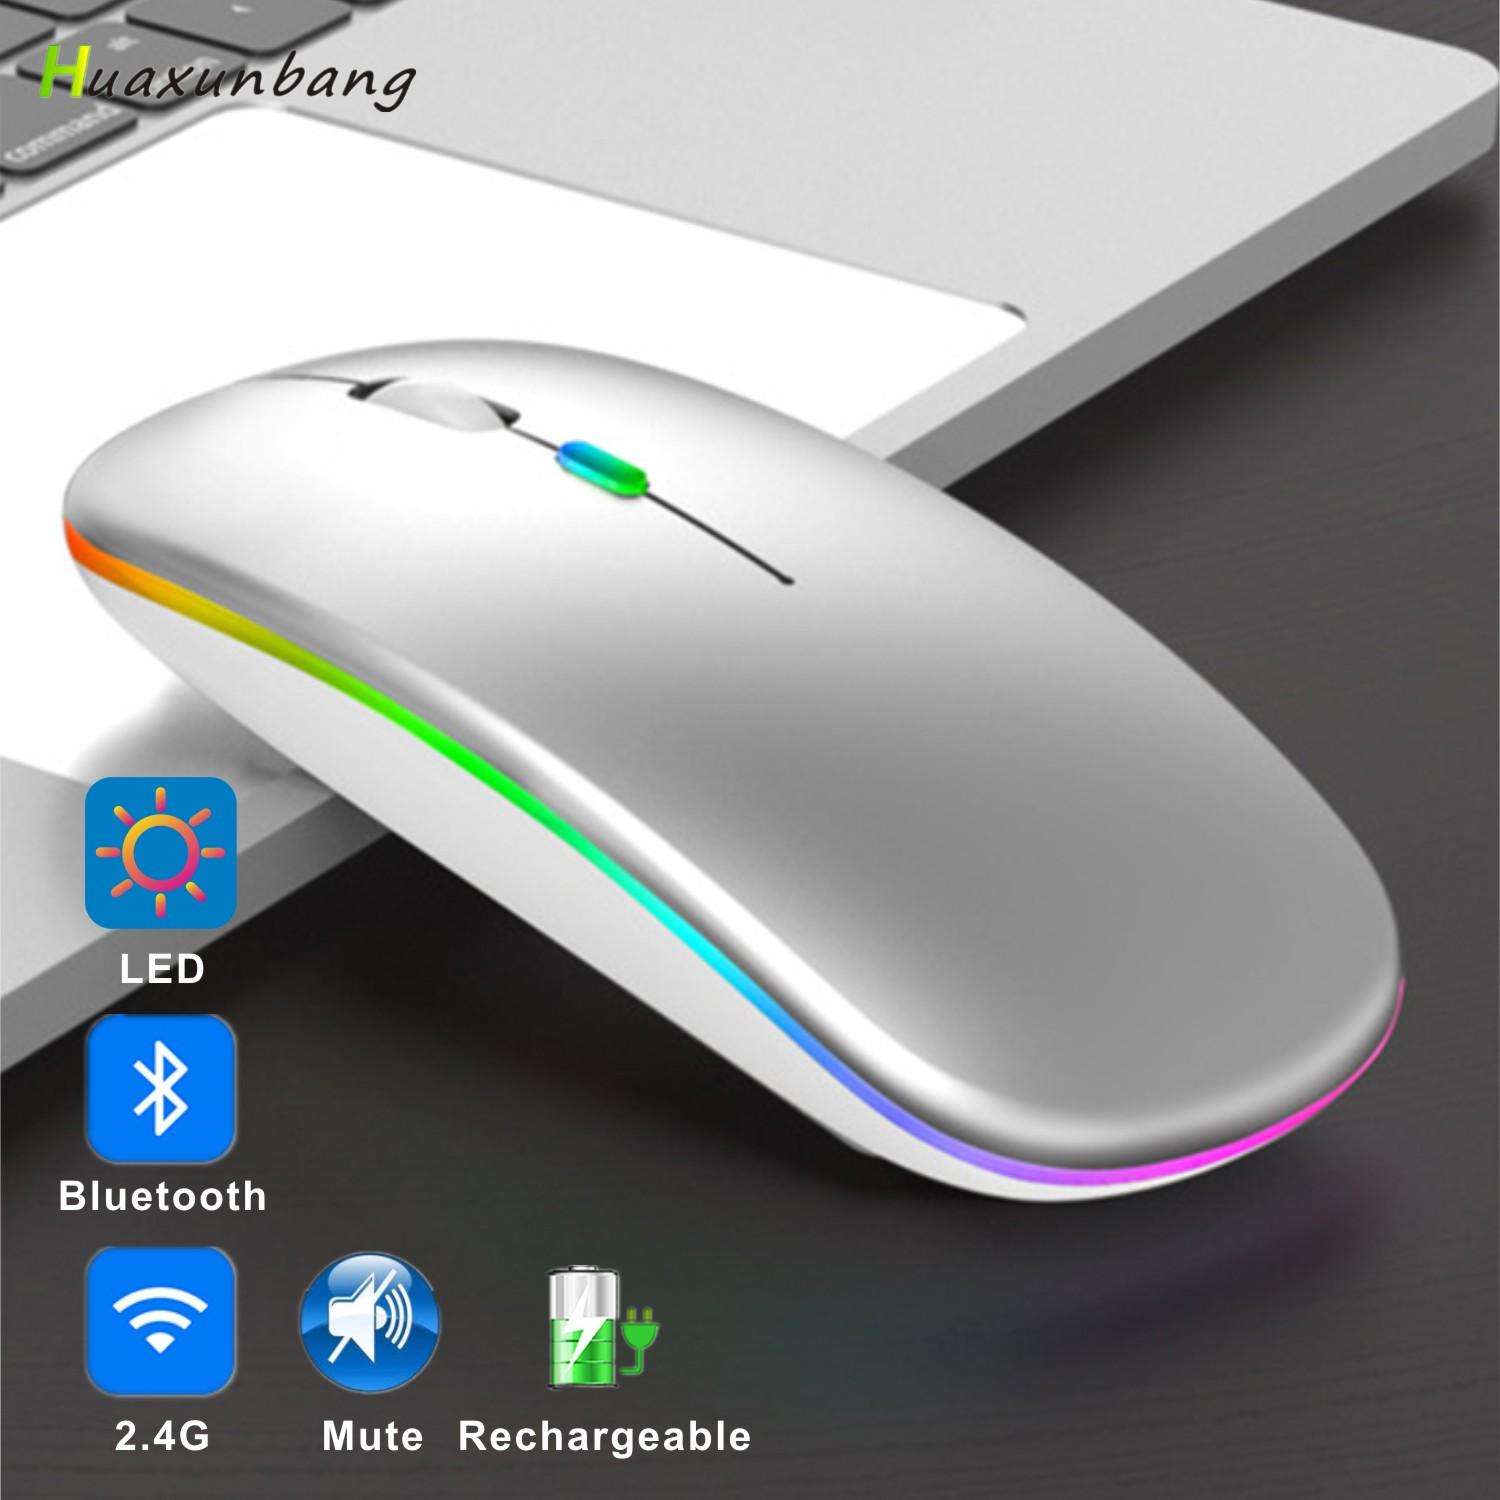 Chuột Bluetooth Sạc Thiết RGB USB 2.4G Quang Không Dây Mause Dành Cho Máy Tính Laptop Macbook Xiaomi Mi Hai Chế Độ Im Lặng chuột